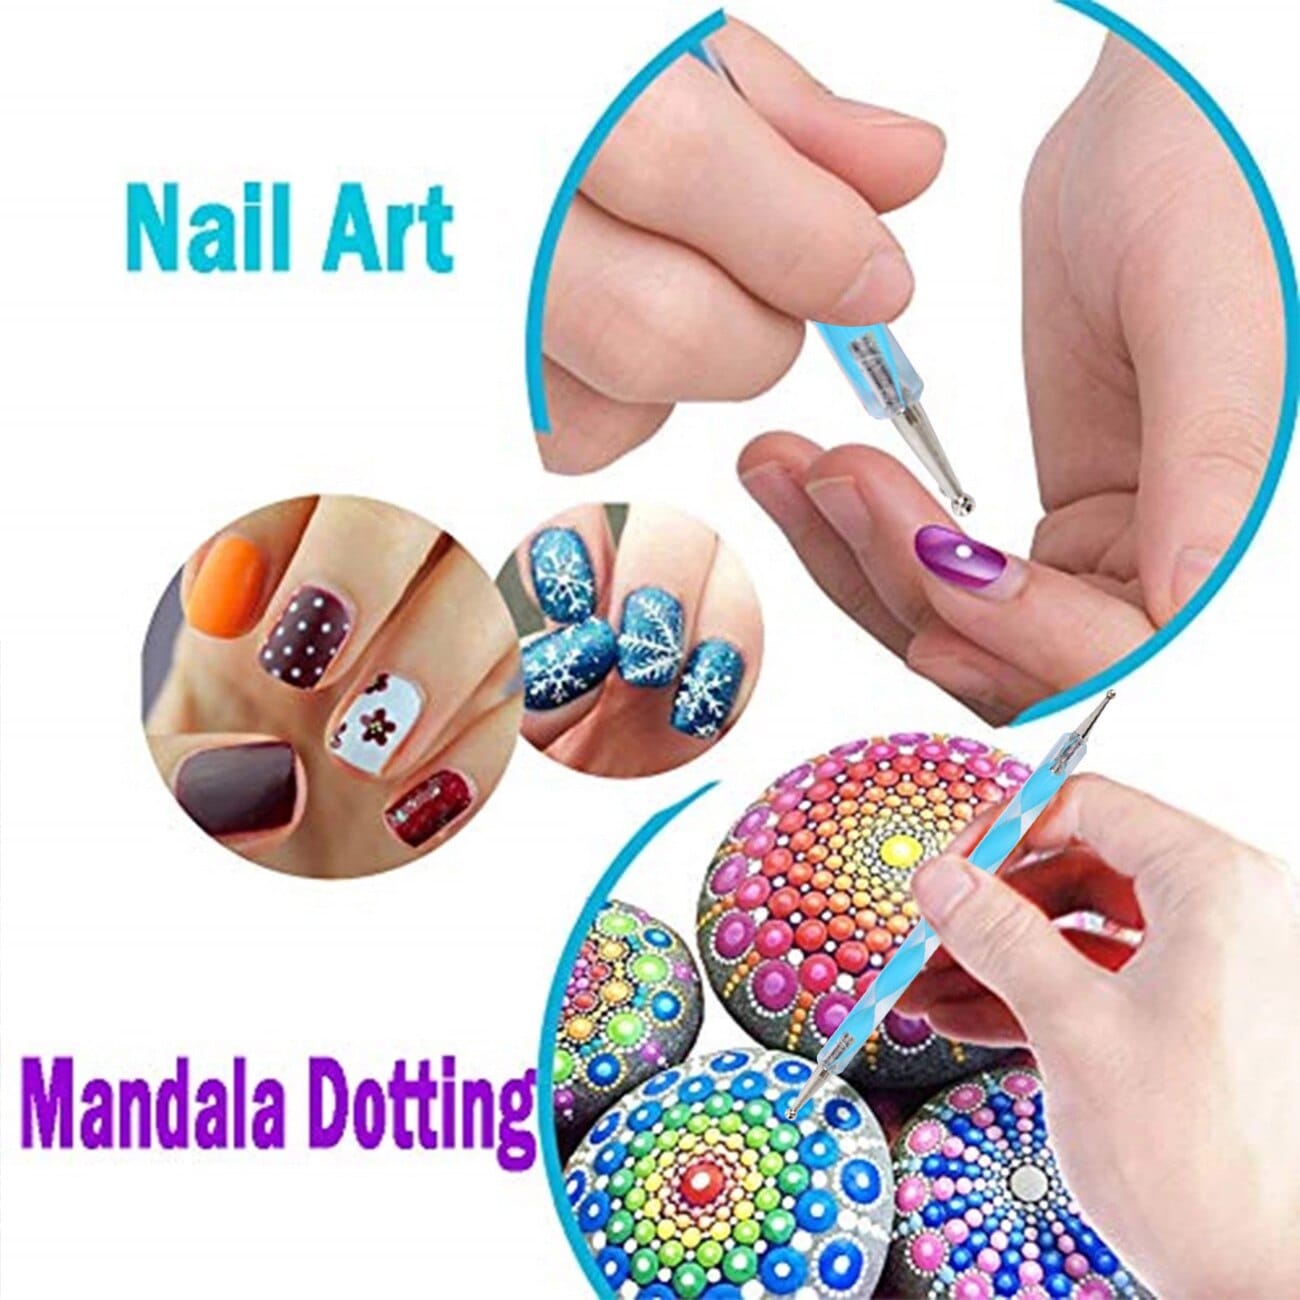 33 pcs Mandala Dotting Tools and Rock Painting Kit - Daladots